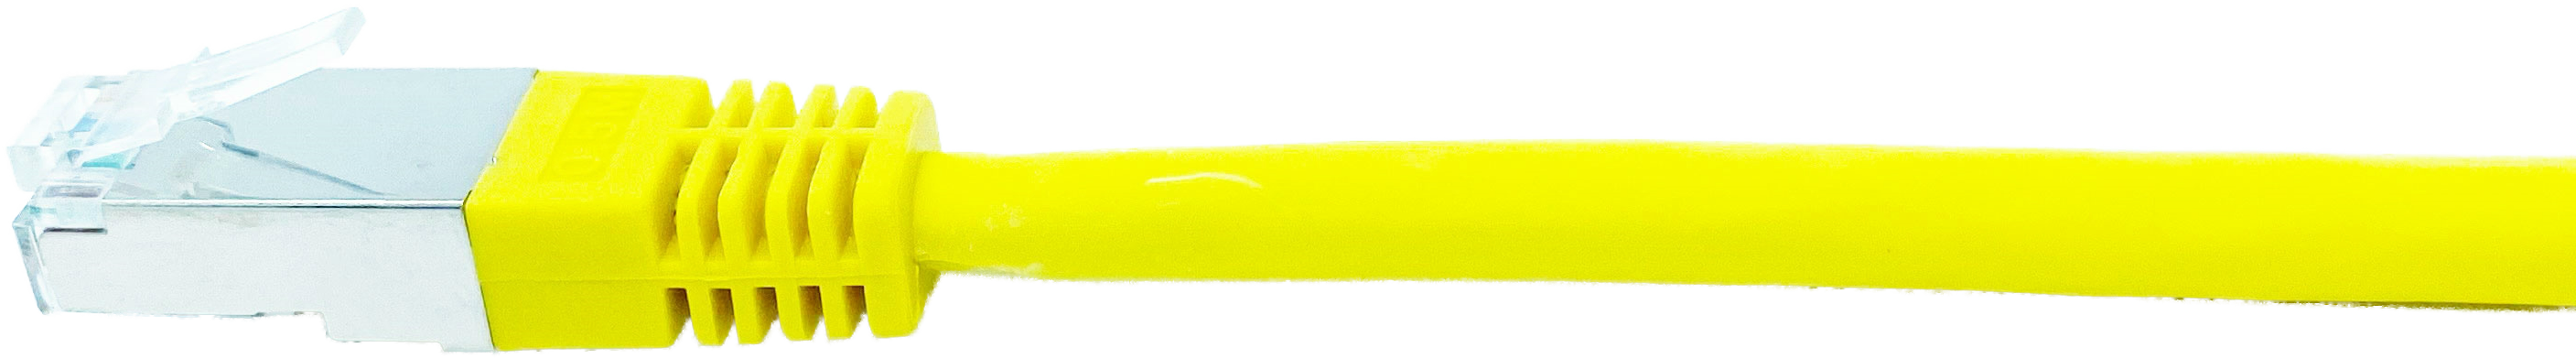 Kupferpatchkabel Cat.6 250MHz 0,5m gelb